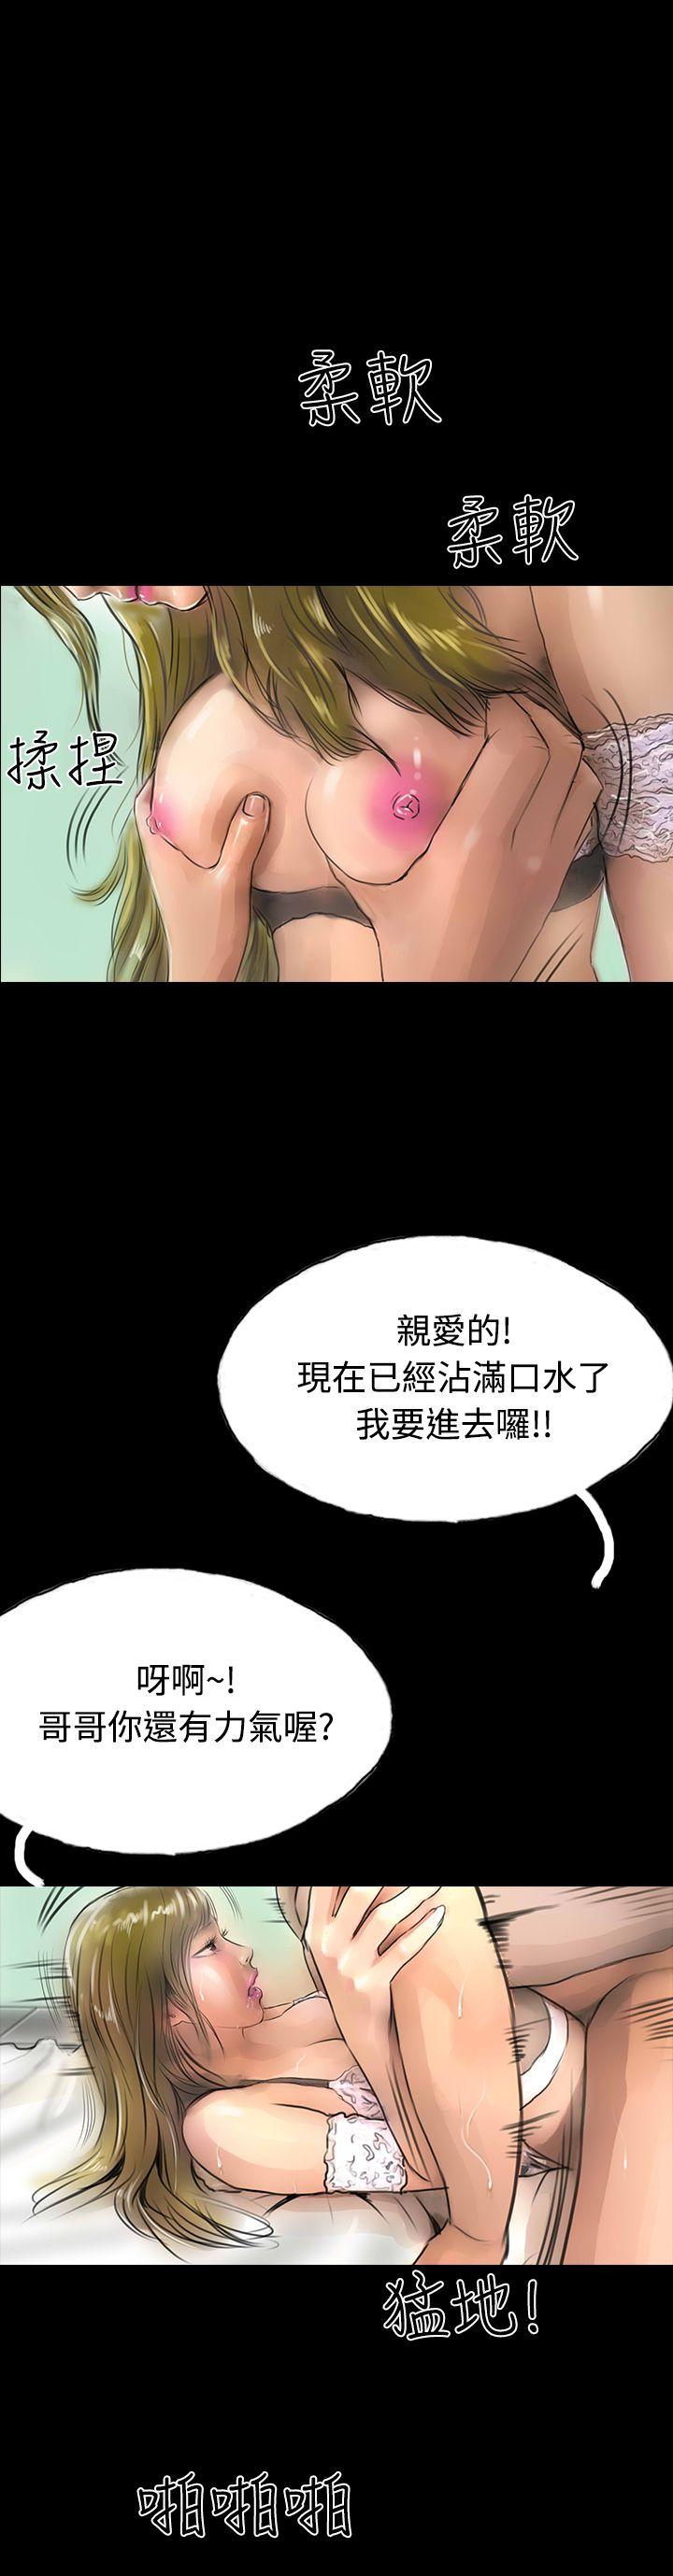 韩国污漫画 啵啵啵 第10话 13